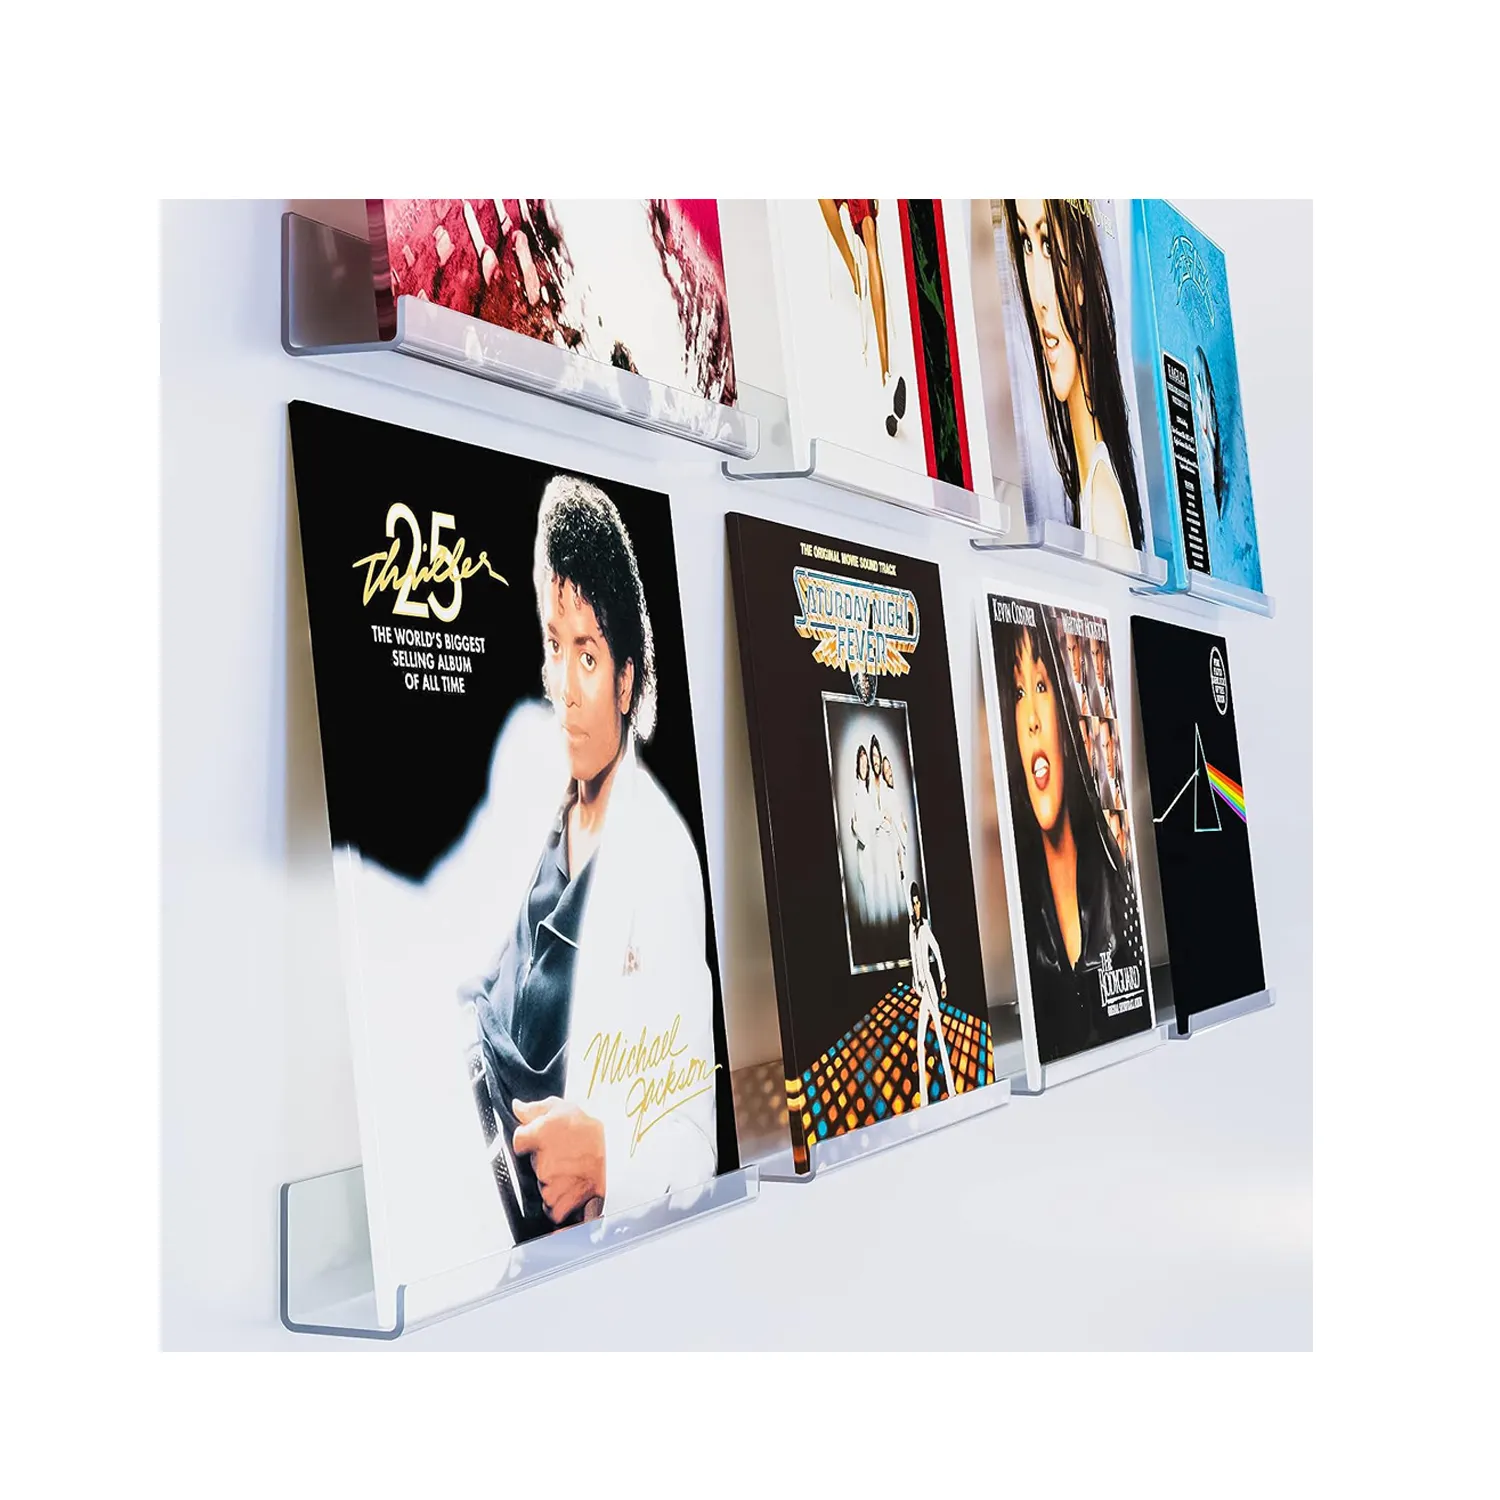 8 Pak rak rekaman vinil bening 12 inci bingkai Album pasang dinding untuk rekaman vinil untuk menampilkan dekorasi unik untuk merekam musik Coll